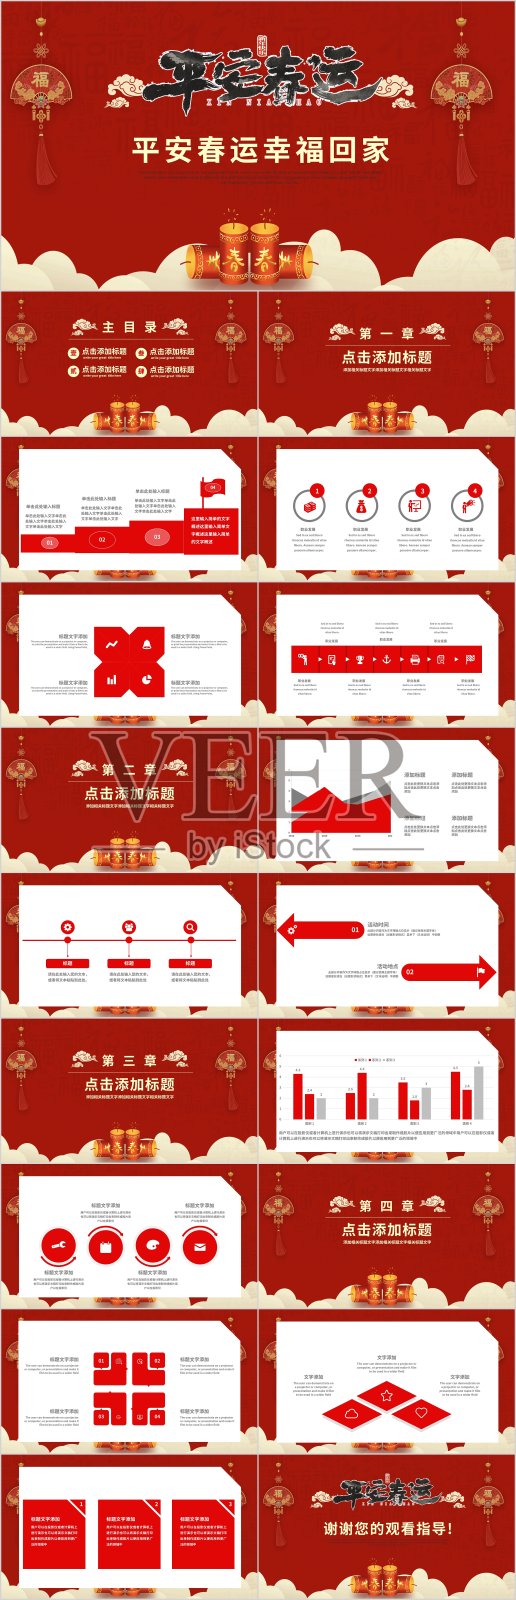 平安春运红色PPT模板设计模板素材